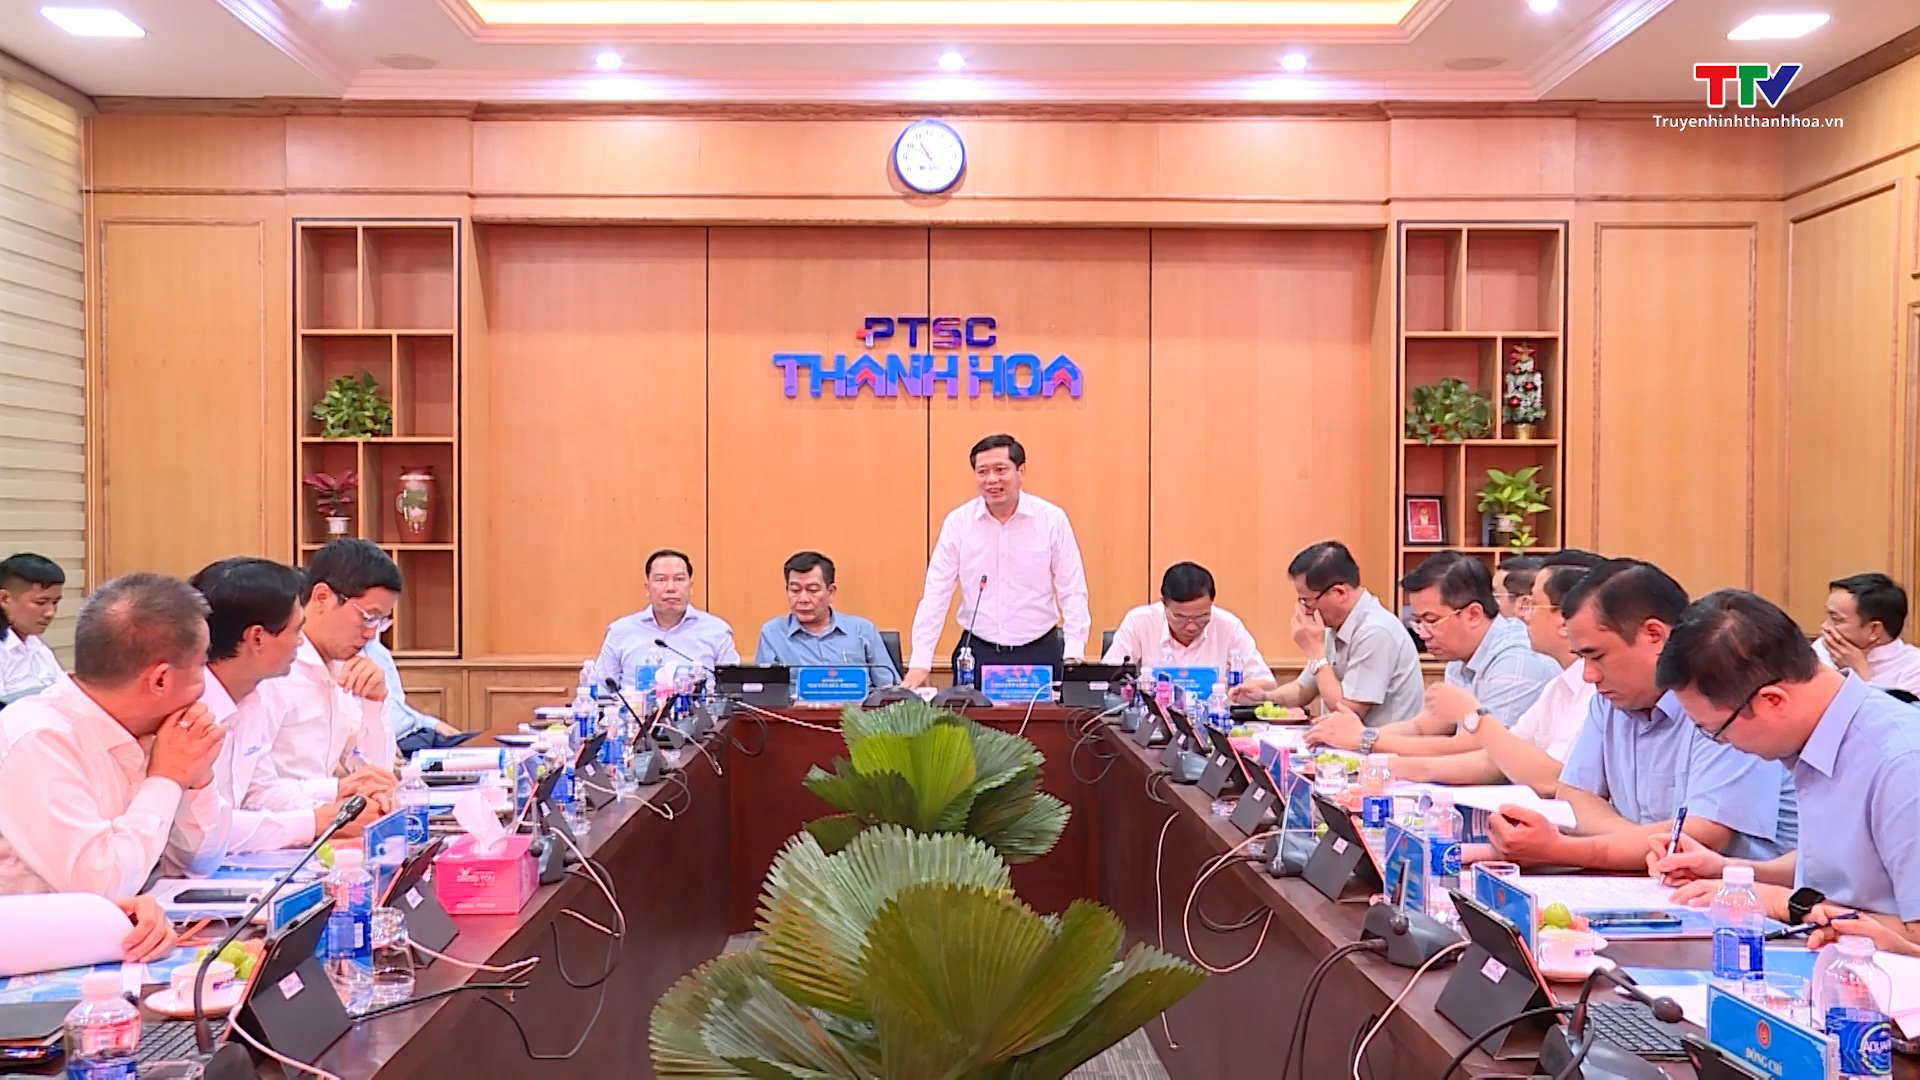 Đảng ủy Khối doanh nghiệp Trung ương làm việc với PTSC Thanh Hóa - Ảnh 3.